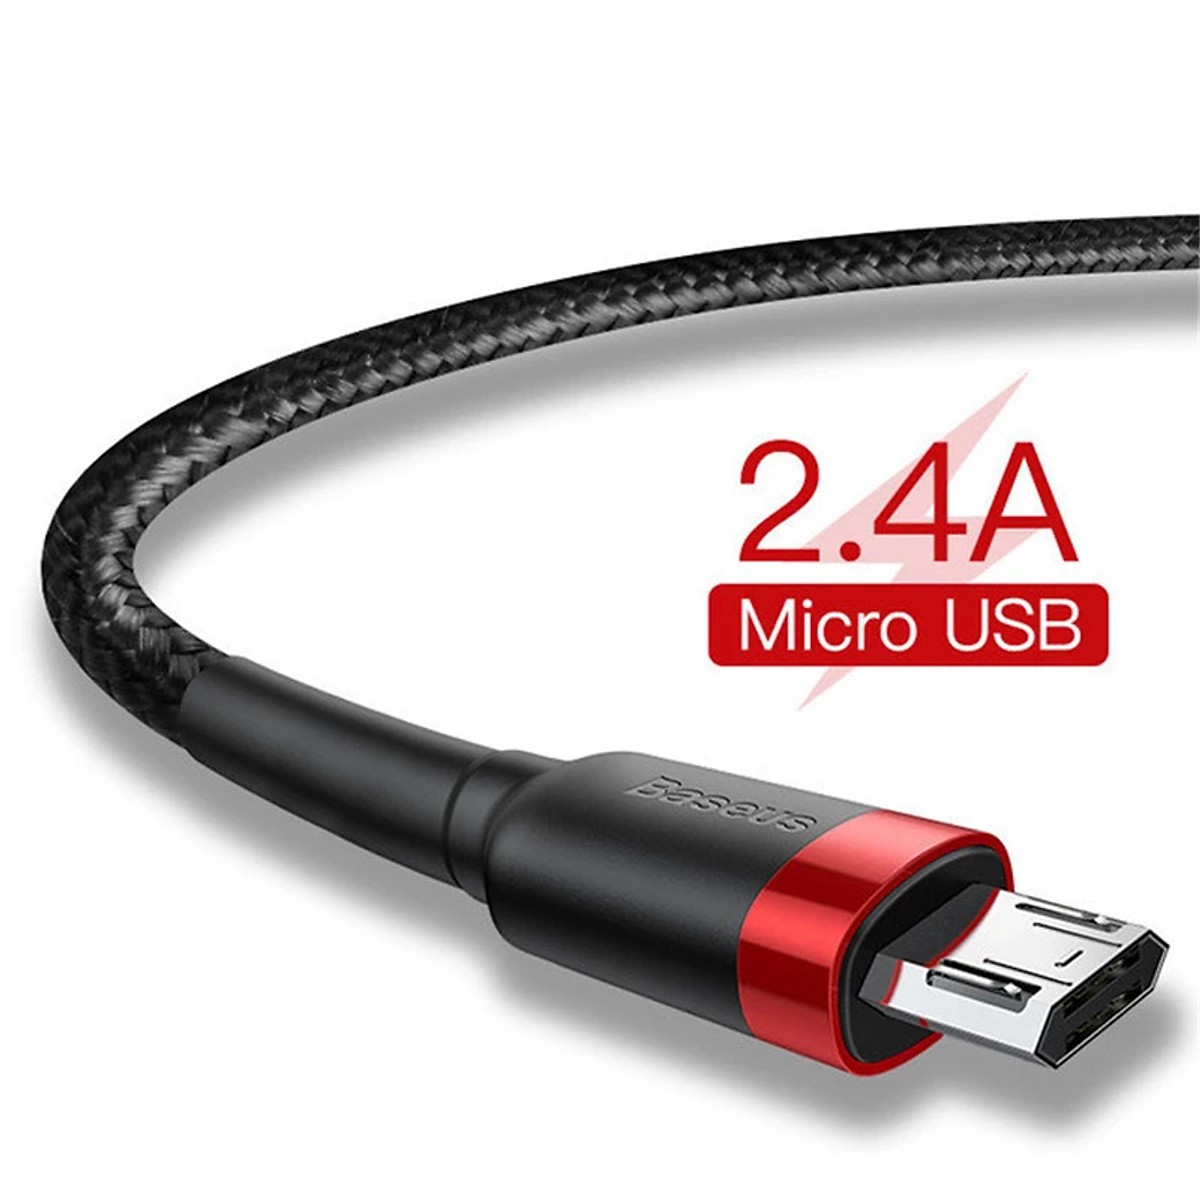 Cáp sạc nhanh Cafule Micro USB Cho Smartphone Android 2.4A/Quick charge 3.0 1m - Hàng nhập khẩu